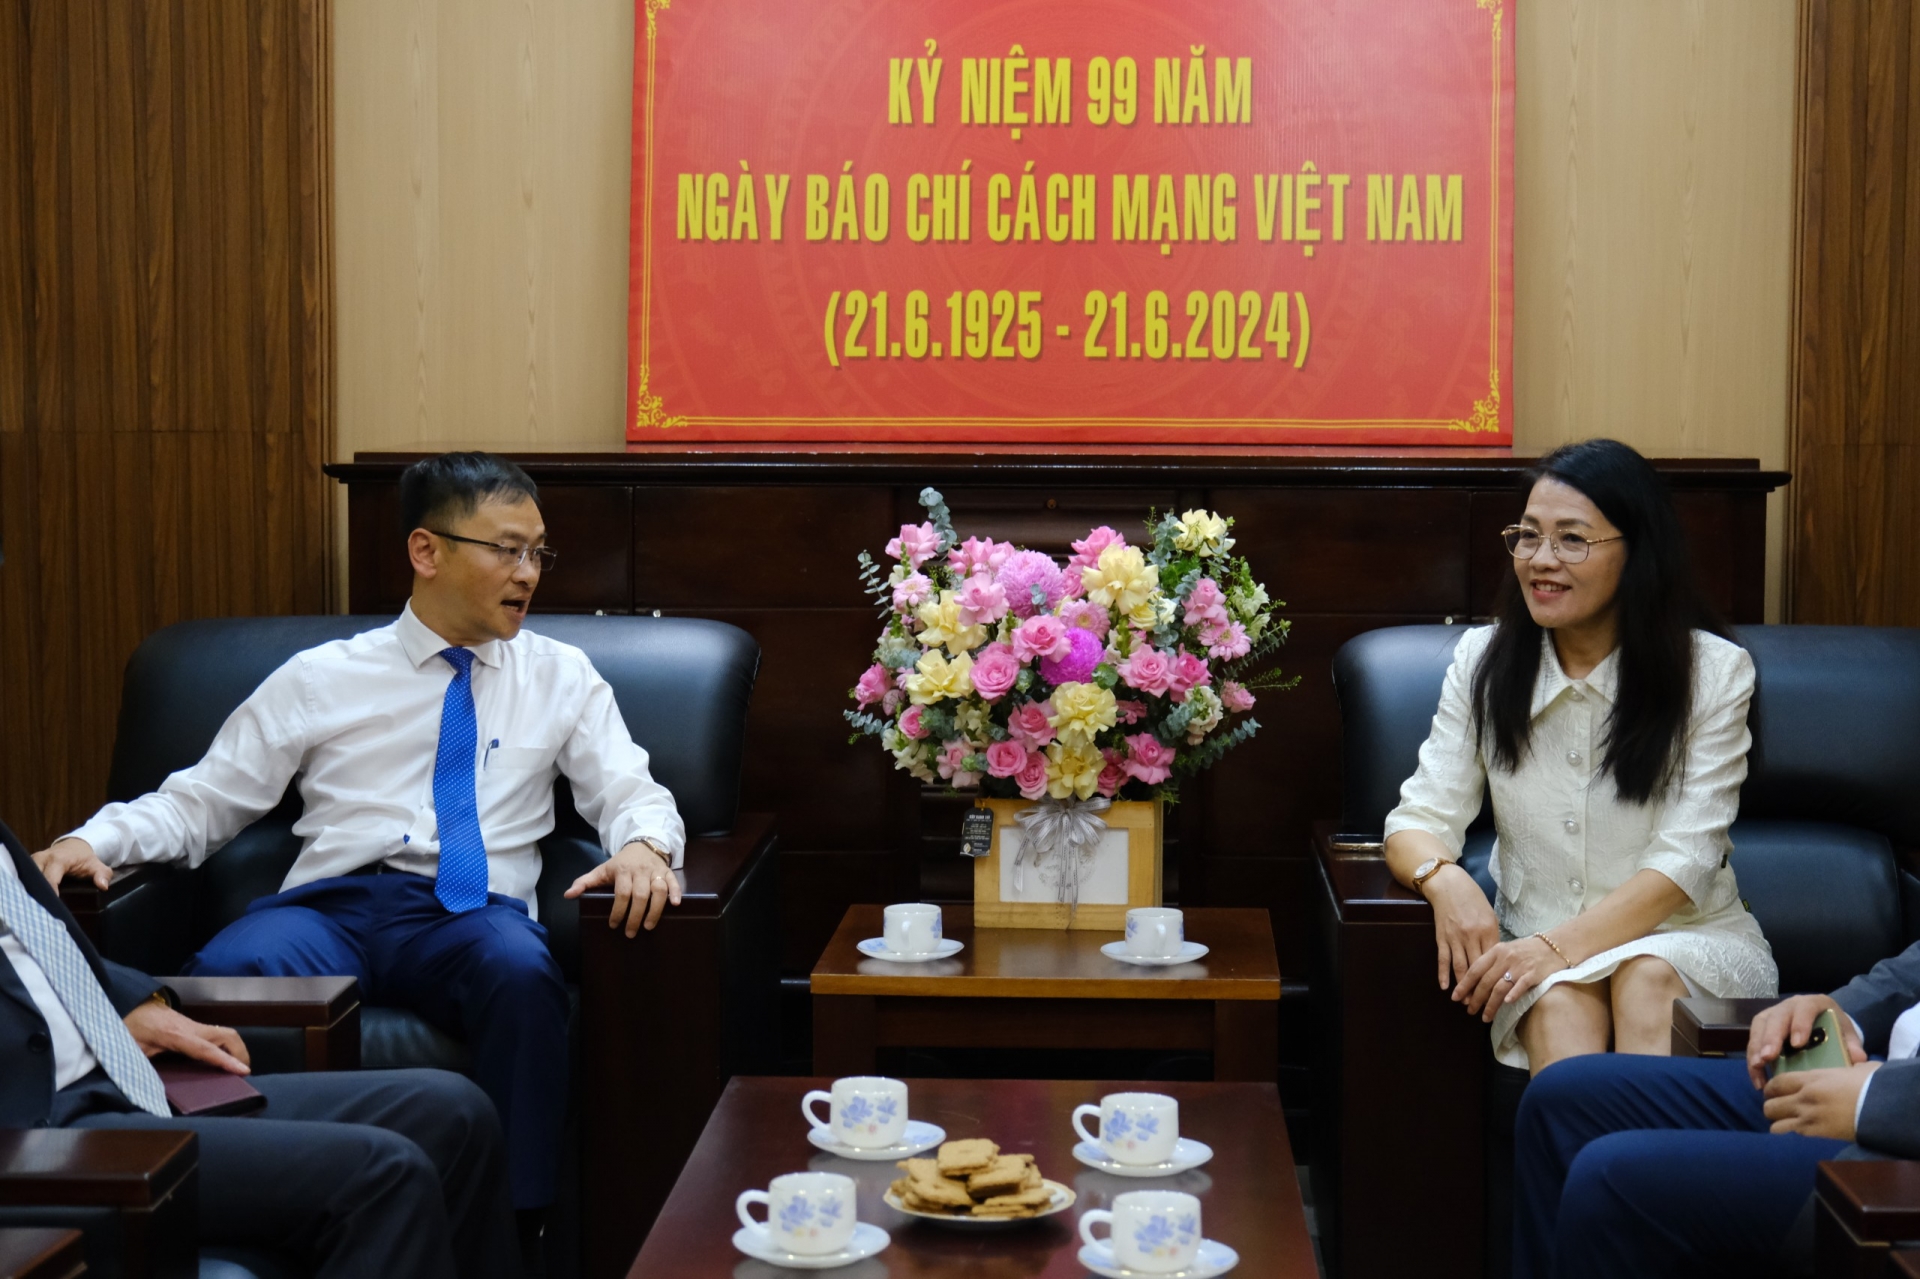 Đồng chí Đặng Quang Tú - Chủ tịch UBND TP Đà Lạt và Nhà báo Hồ Lan - Tổng biên tập Báo Lâm Đồng